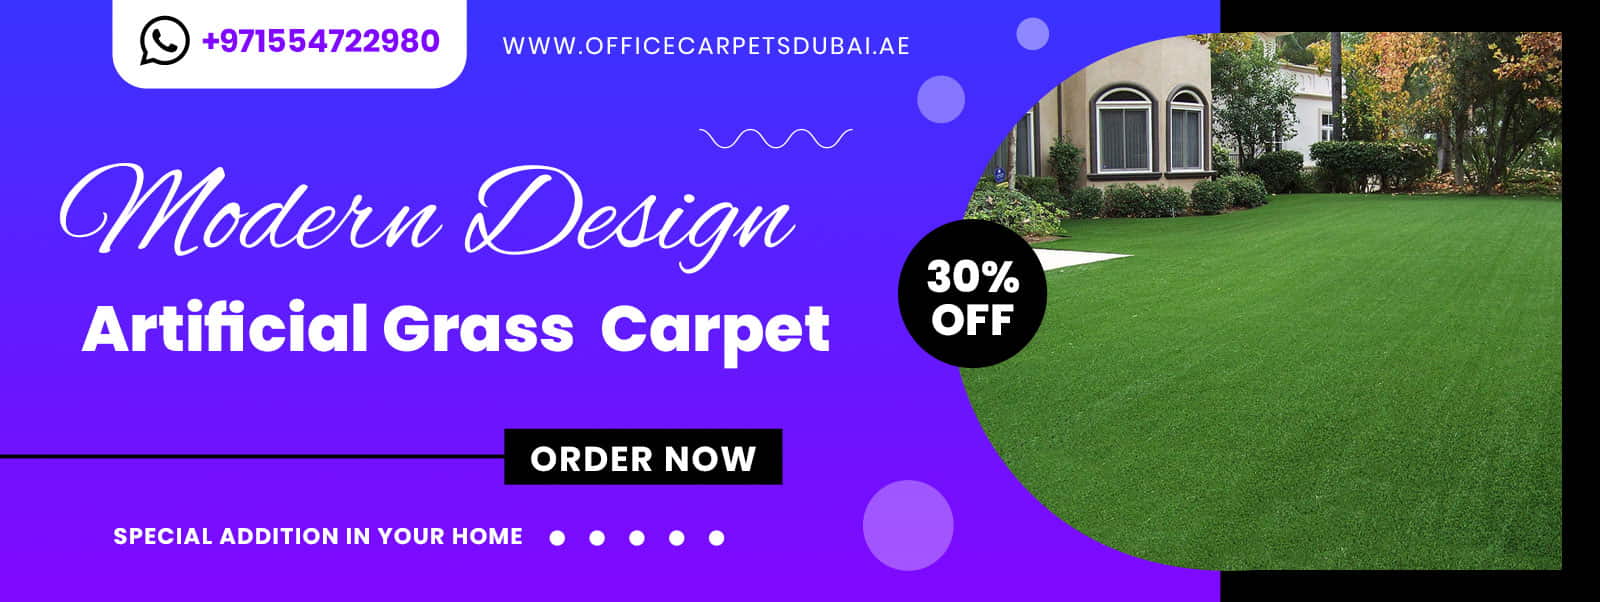 Best-Quality-Artificial-Grass-Carpet